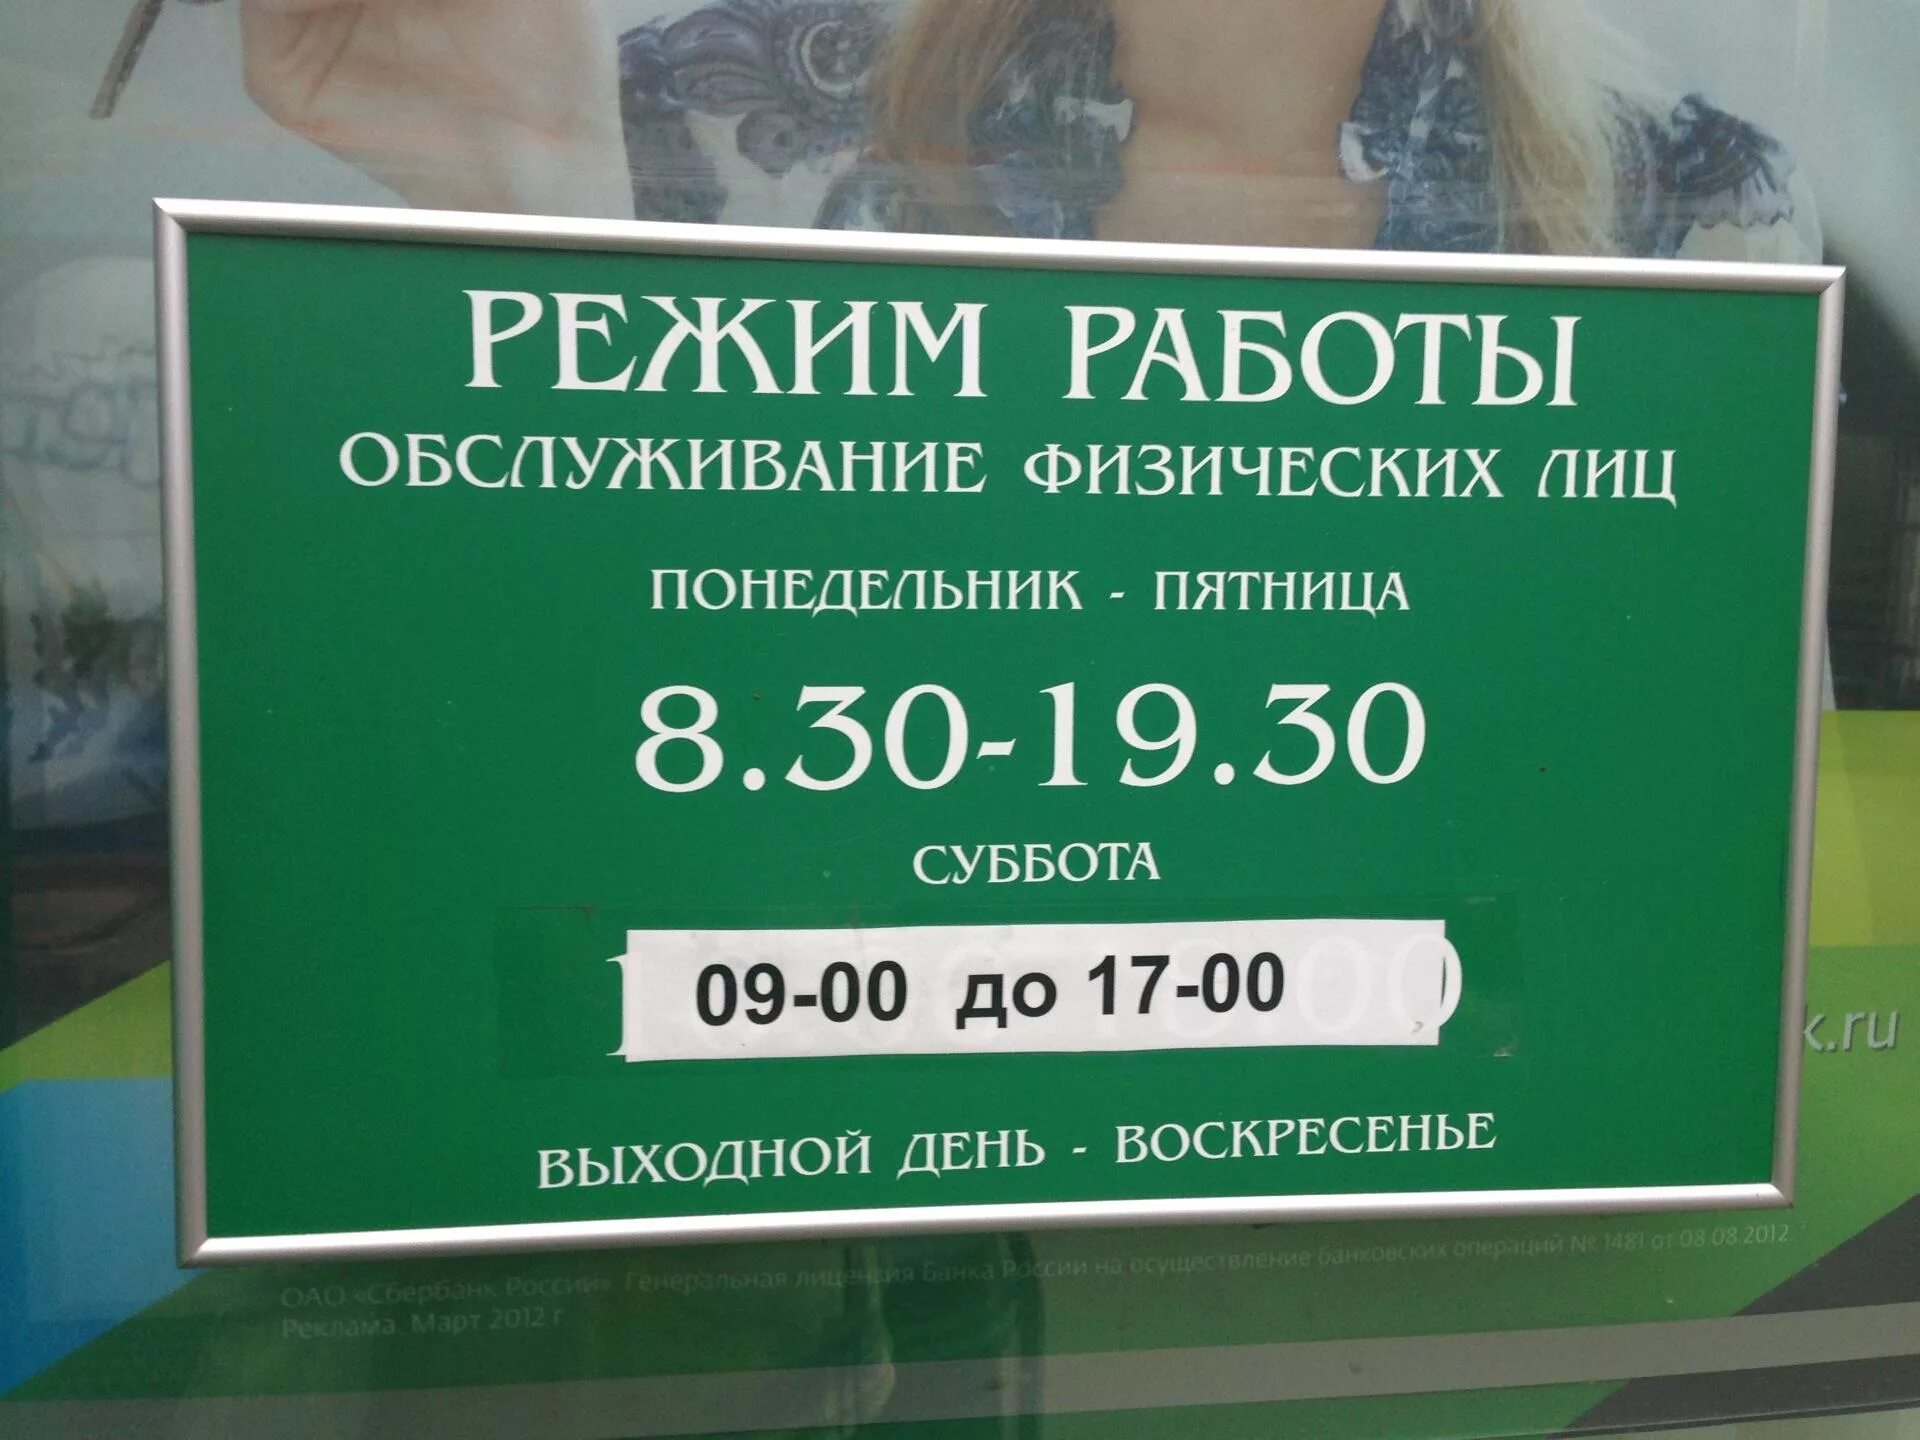 Сбербанк рабочи час. Рабочие дни Сбербанка. График работы Сбербанка в Москве. Сбербанк работает в субботу. Суббота воскресенье Сбербанк работает.